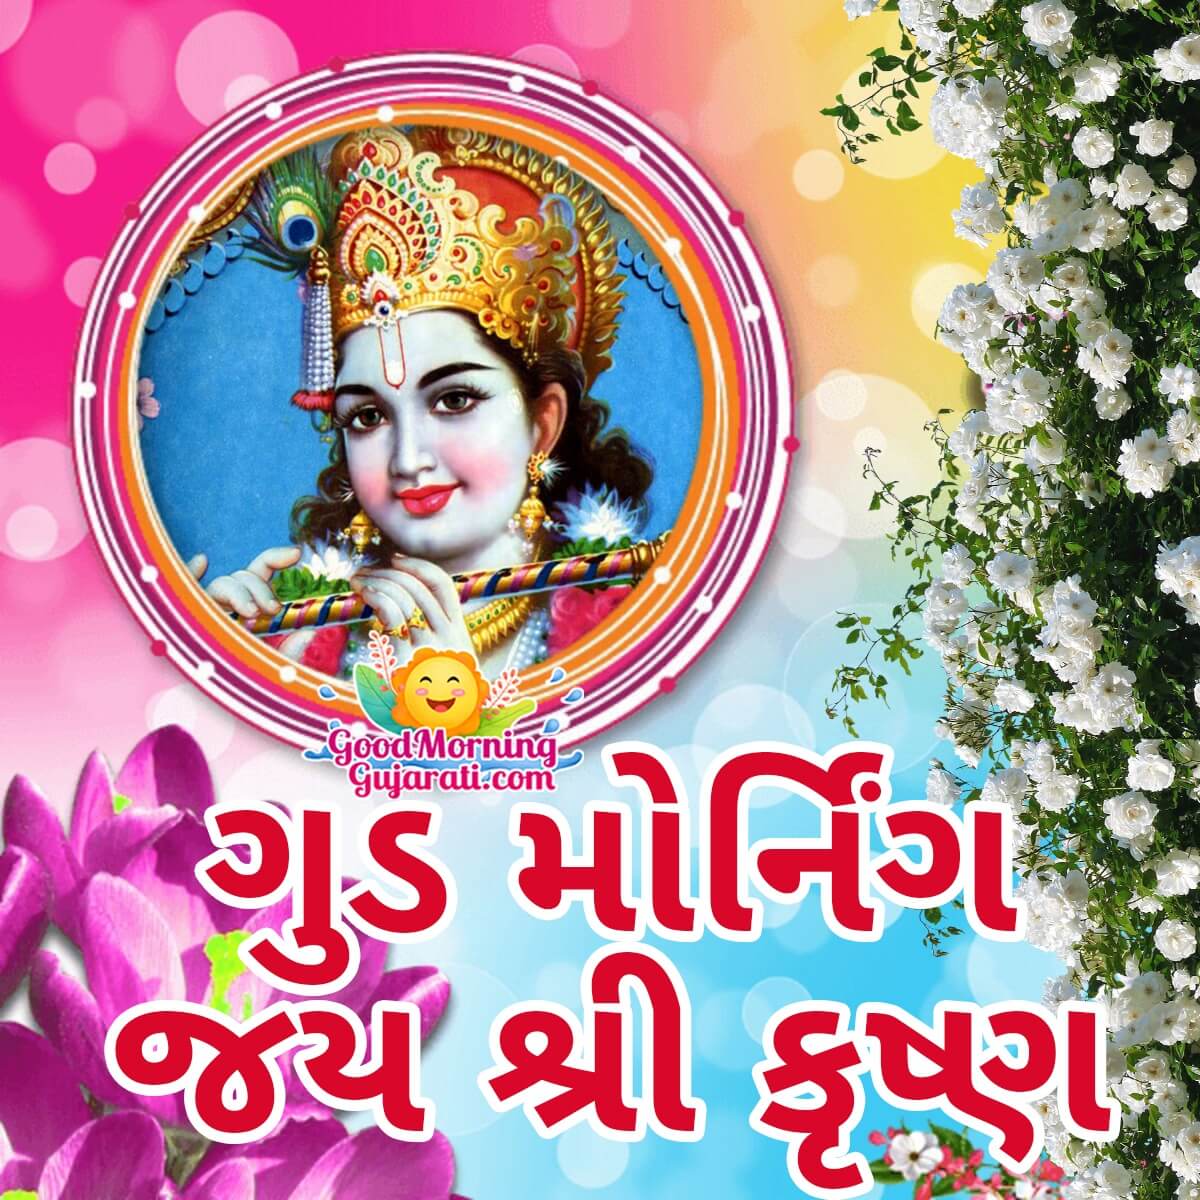 Good Morning Jai Shri Krishna Image